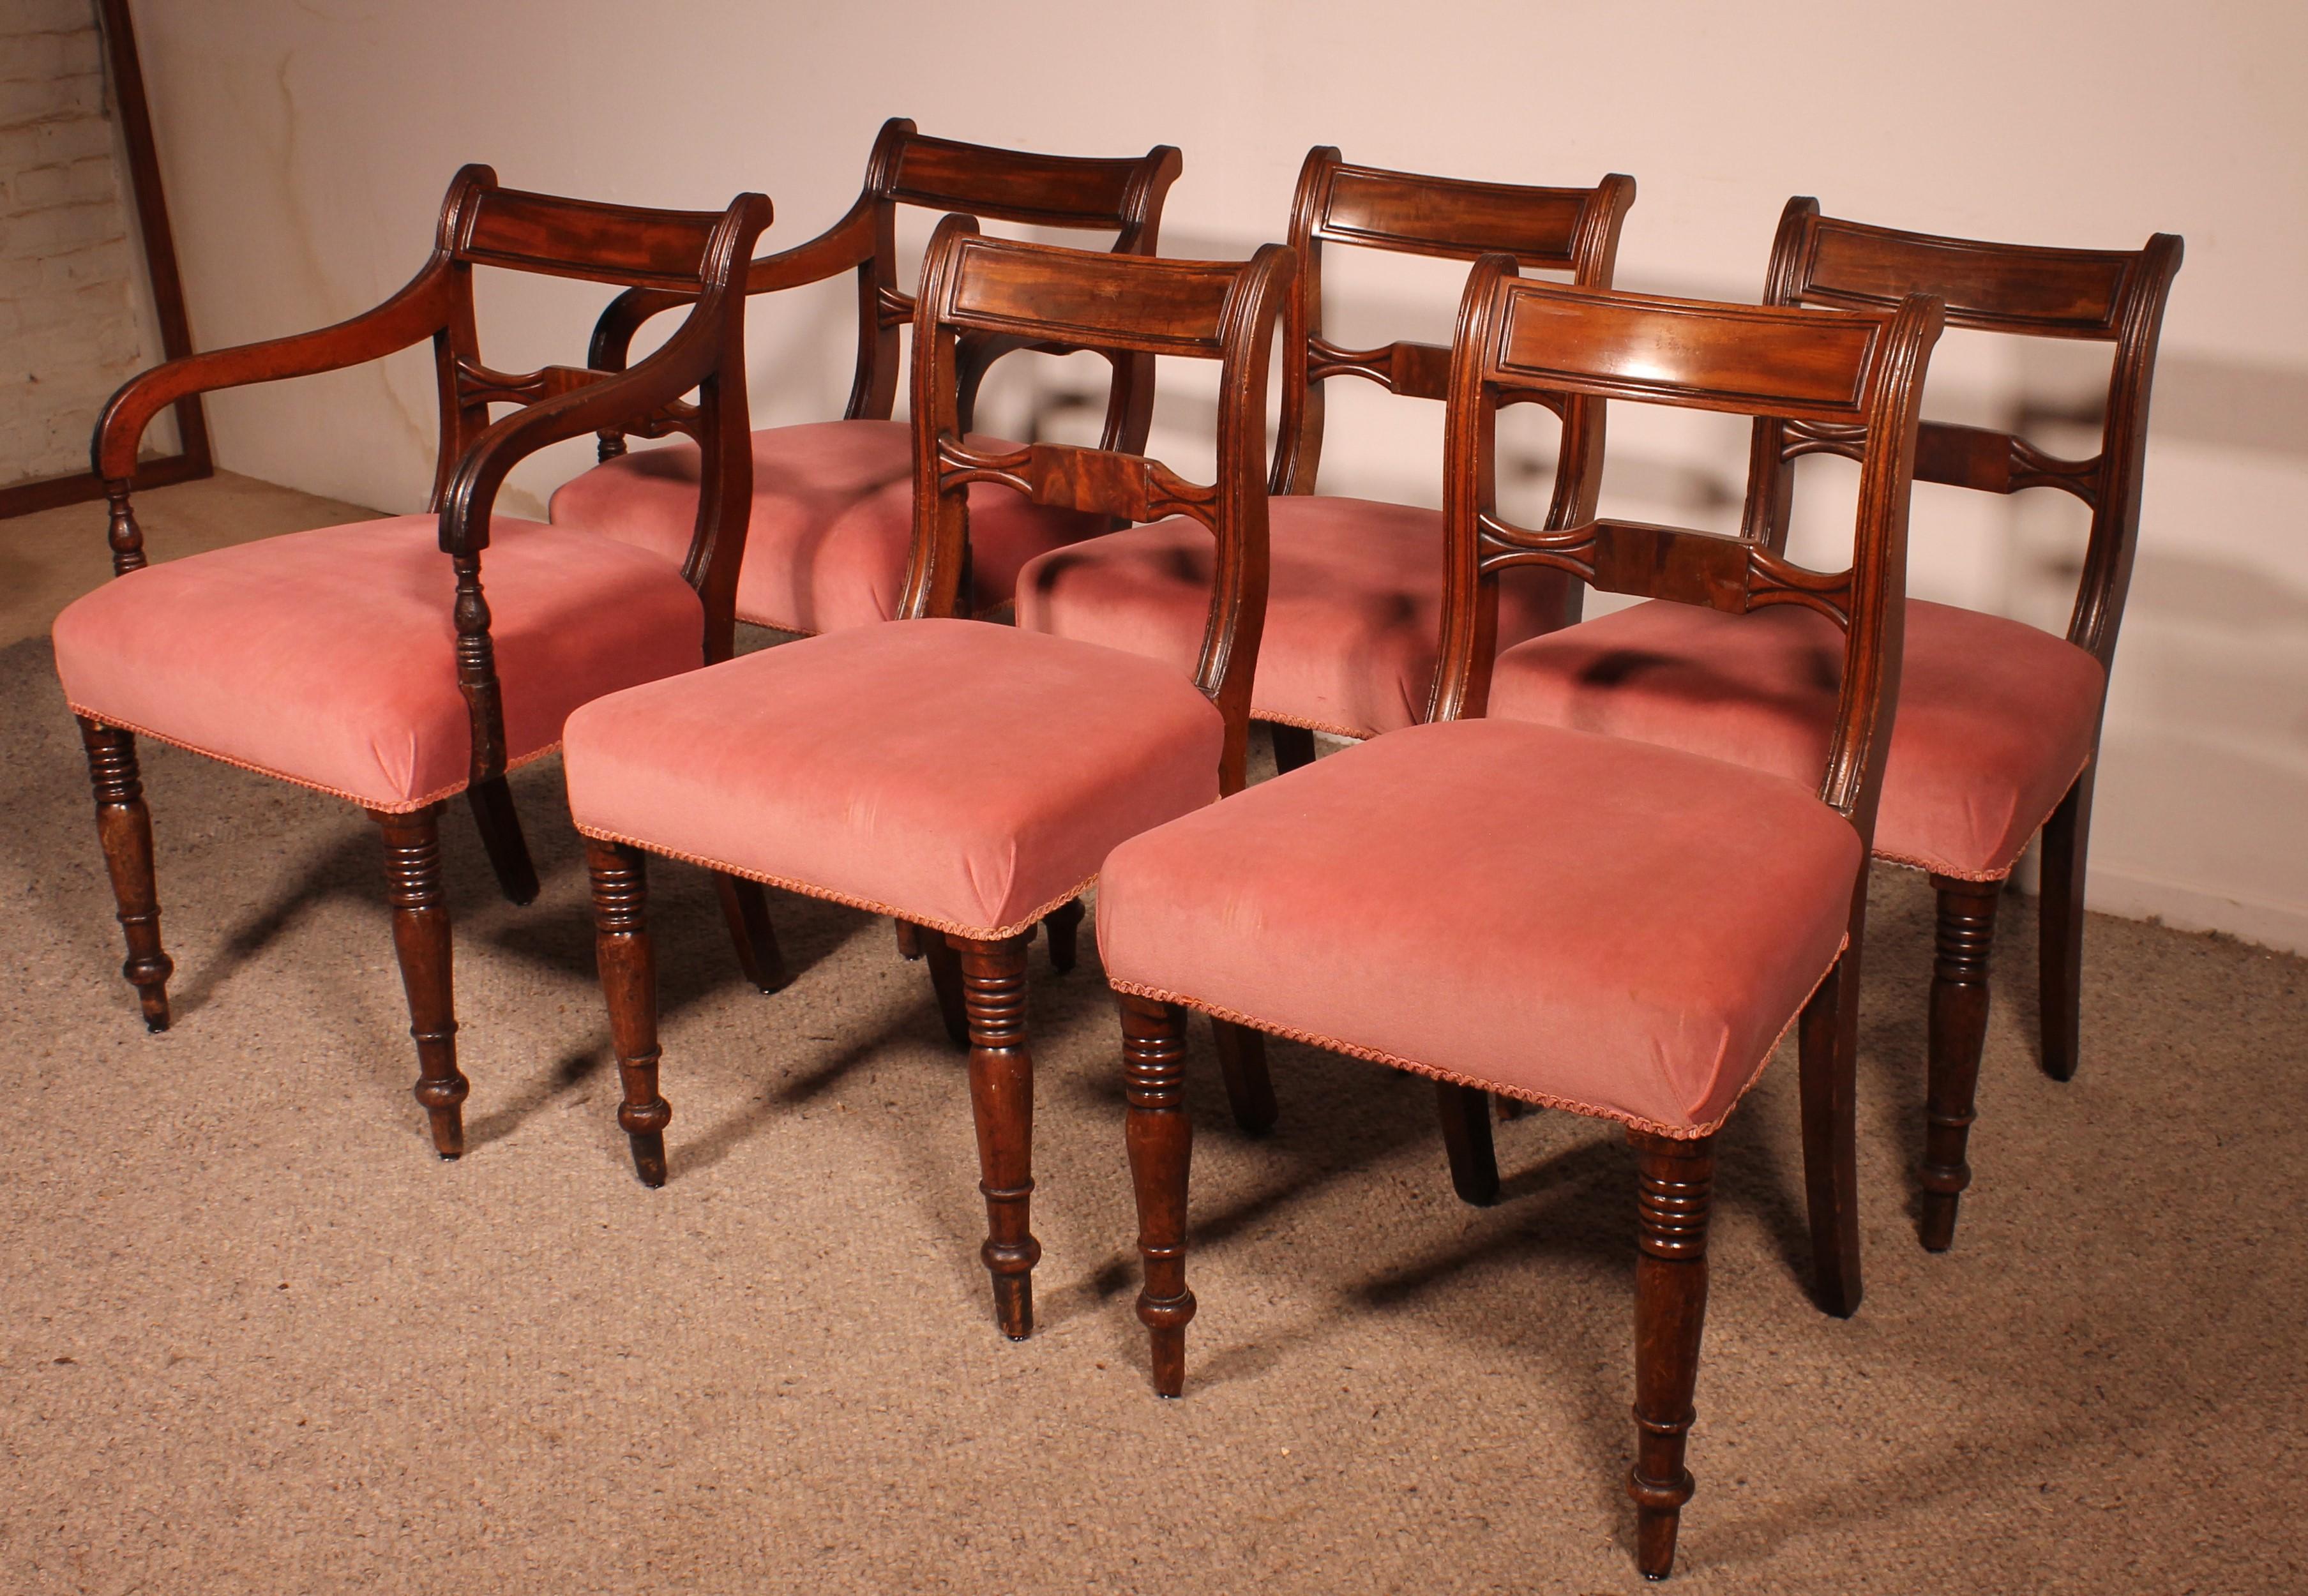 ein feiner Satz von 4 Mahagonistühlen und zwei Sesseln aus der georgianischen Periode des 18. Jahrhunderts aus England

Sehr schöne Set in Mahagoni, die seine schöne ursprüngliche Patina und sehr schön drehen hat
Die Stühle sind sehr bequem und sind